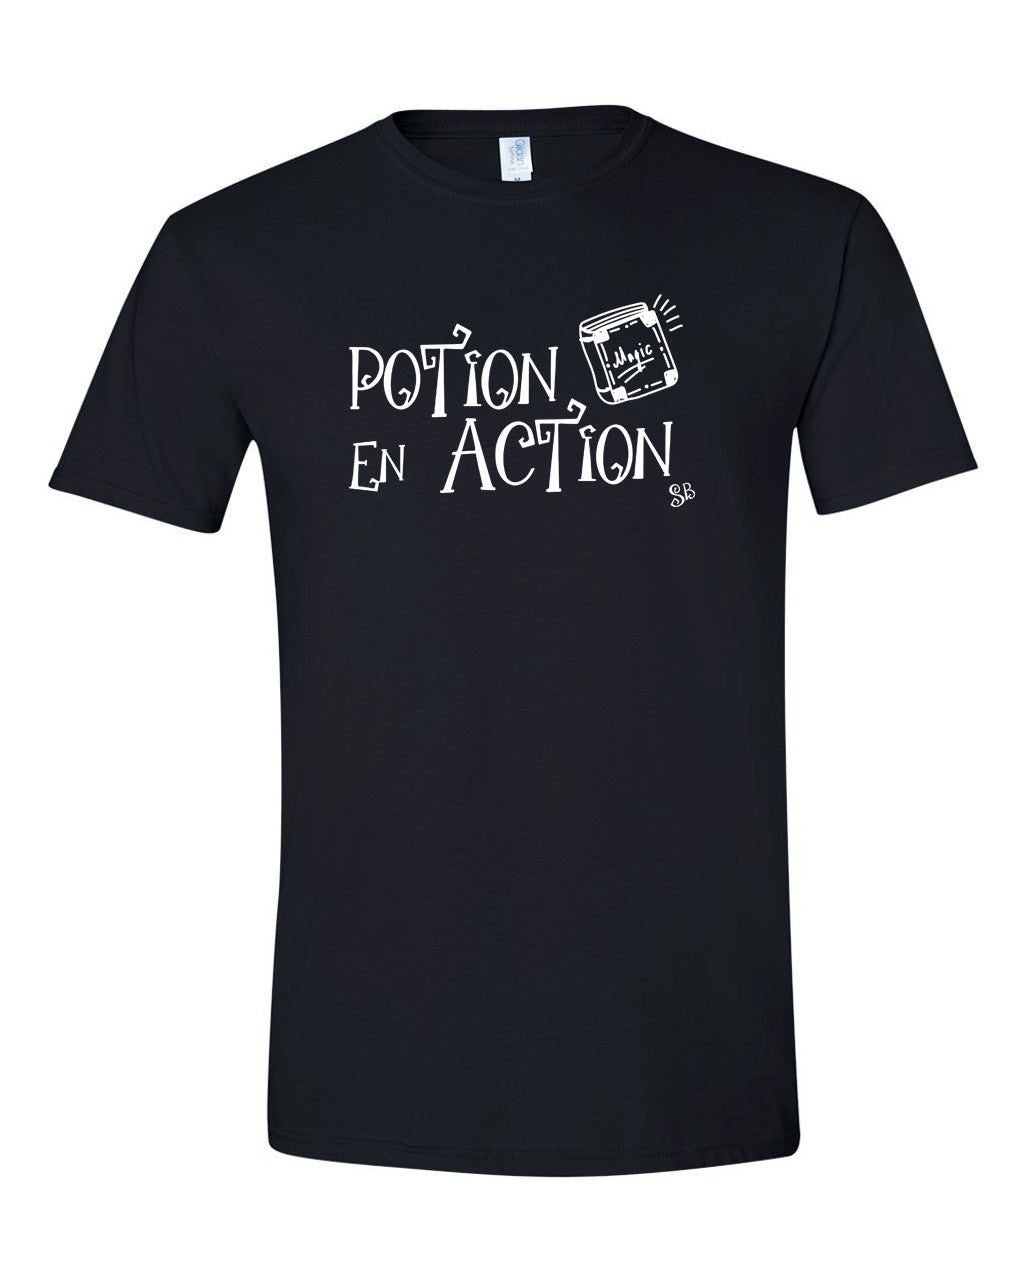 T-shirt - Potion en action